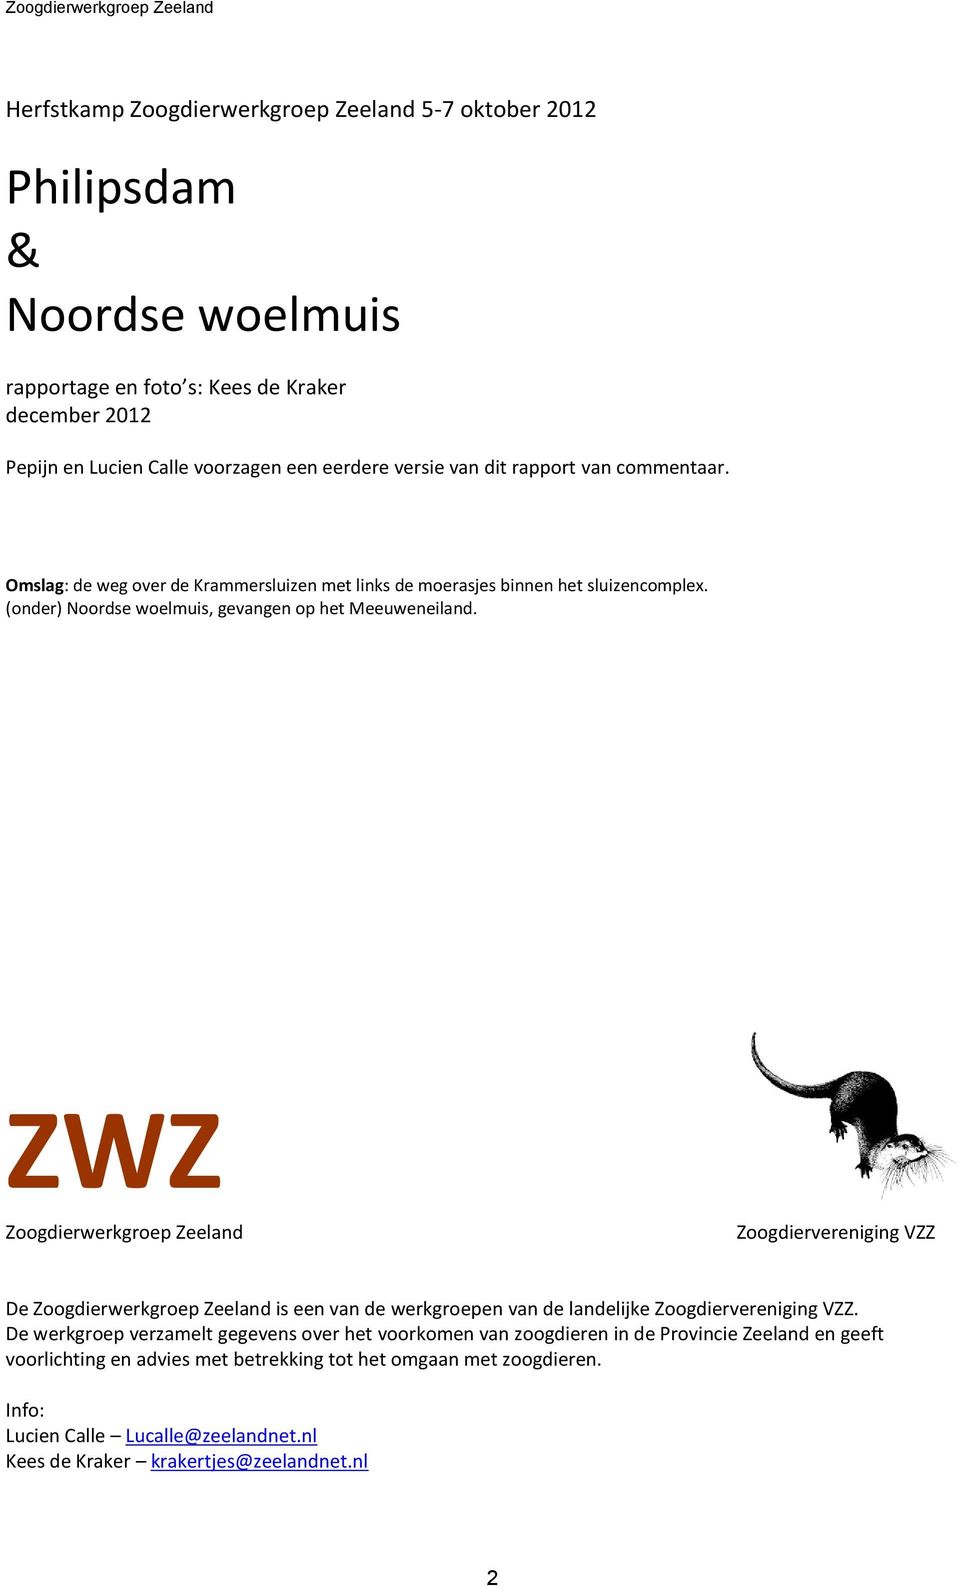 ZWZ Zoogdierwerkgroep Zeeland Zoogdiervereniging VZZ De Zoogdierwerkgroep Zeeland is een van de werkgroepen van de landelijke Zoogdiervereniging VZZ.